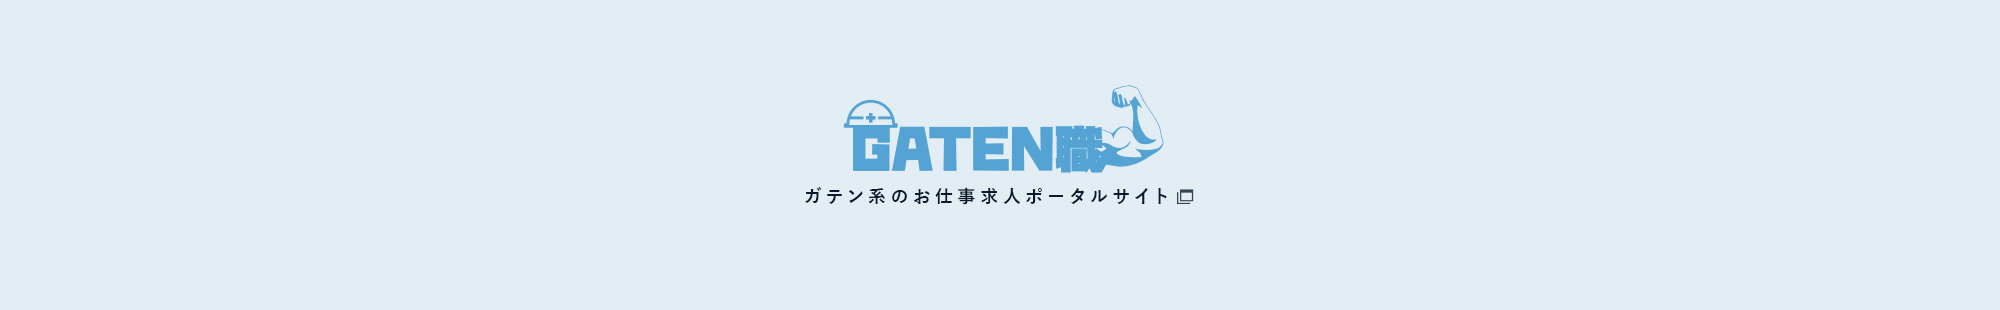 gaten_bnr